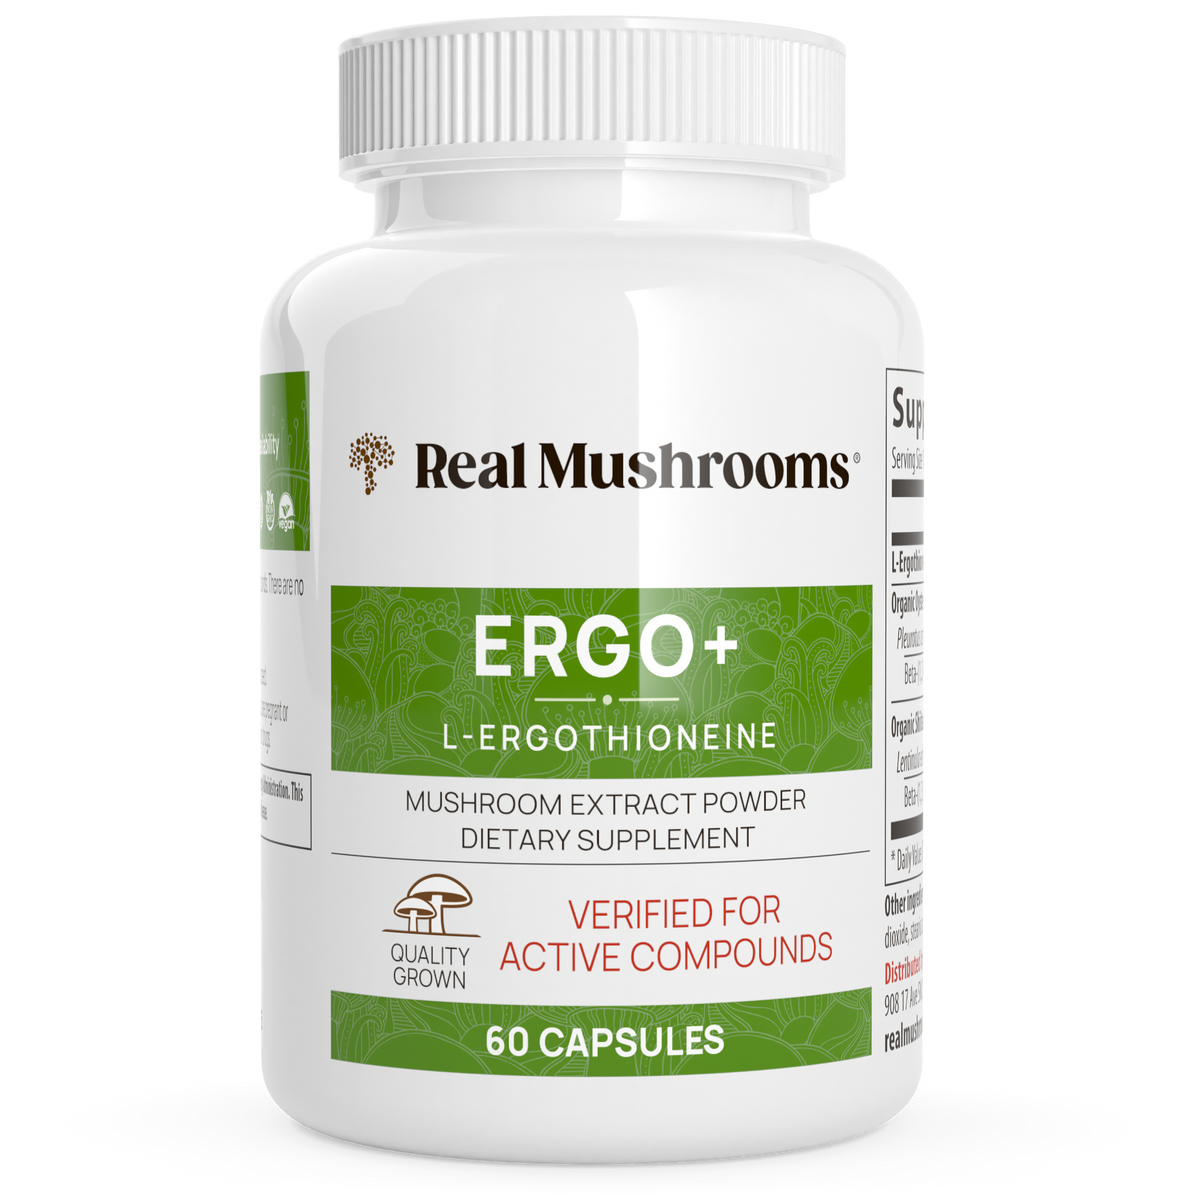 Ergo+ Ergothioneine Supplement by Real Mushrooms